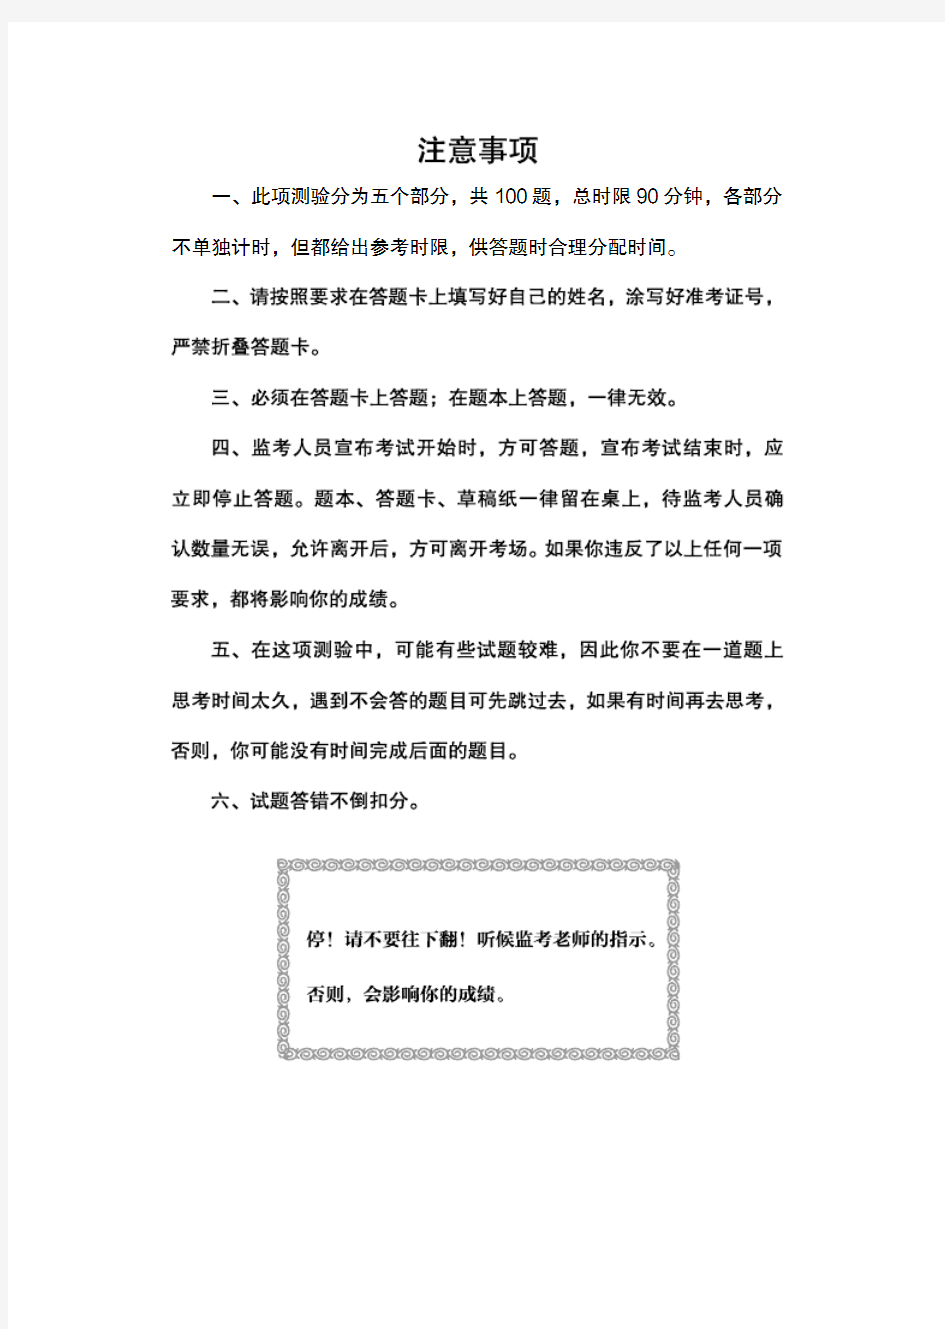 2018 年广东省公务员录用考试